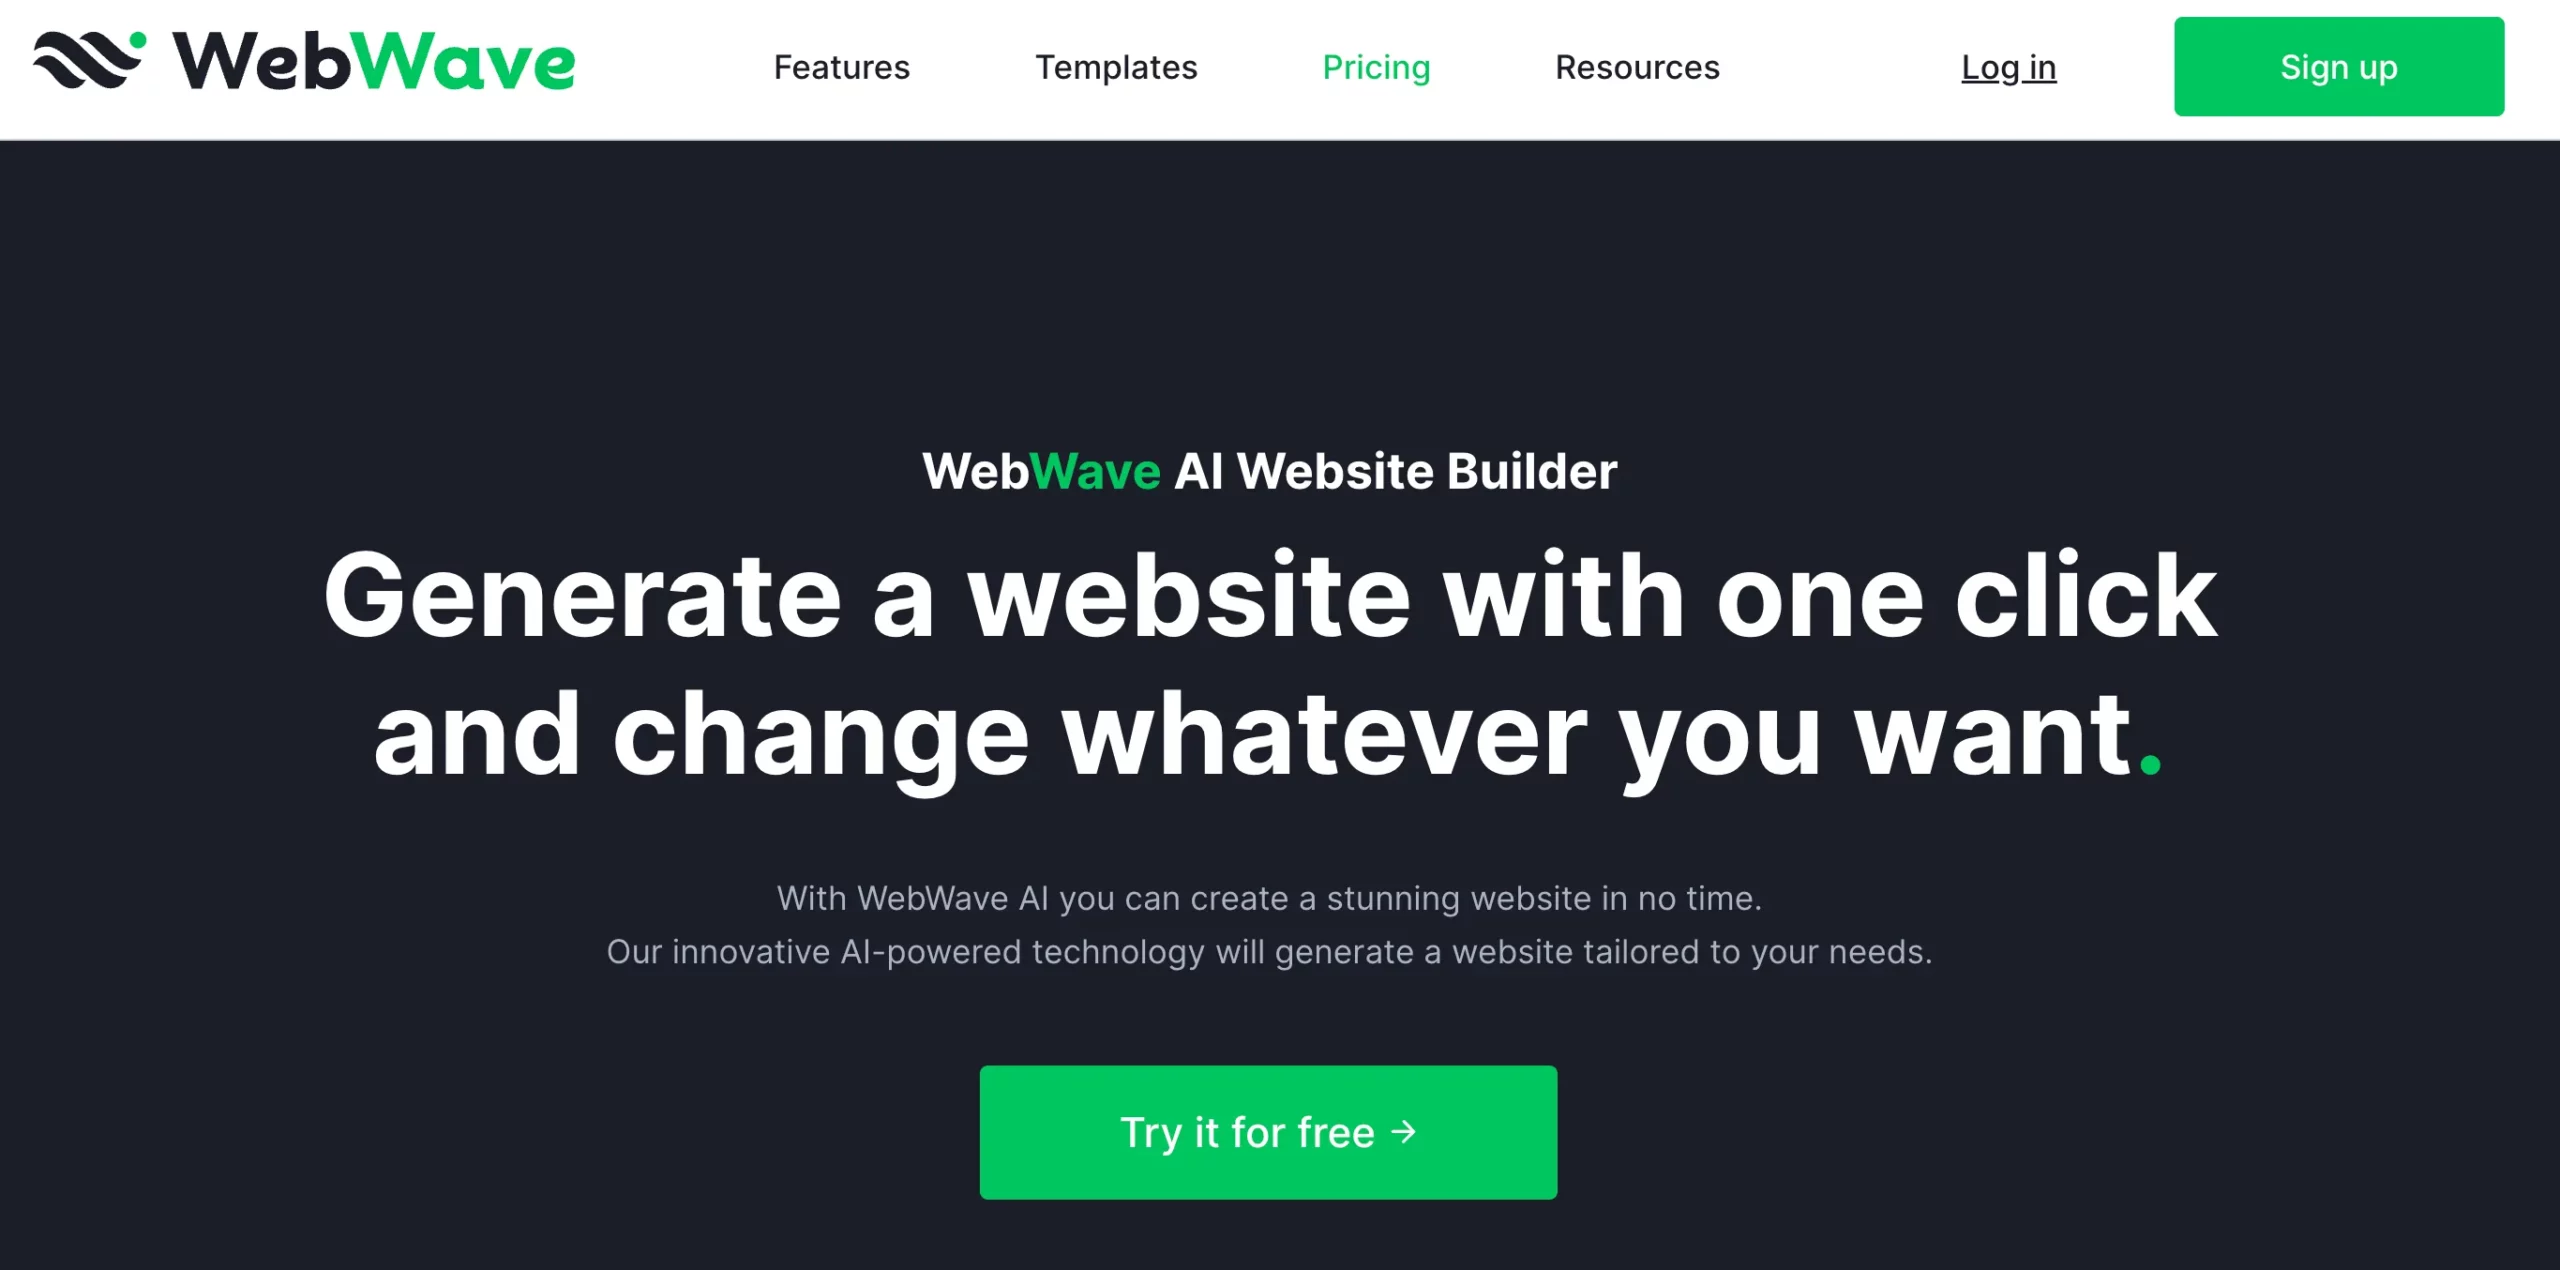 WebWave AI website builder